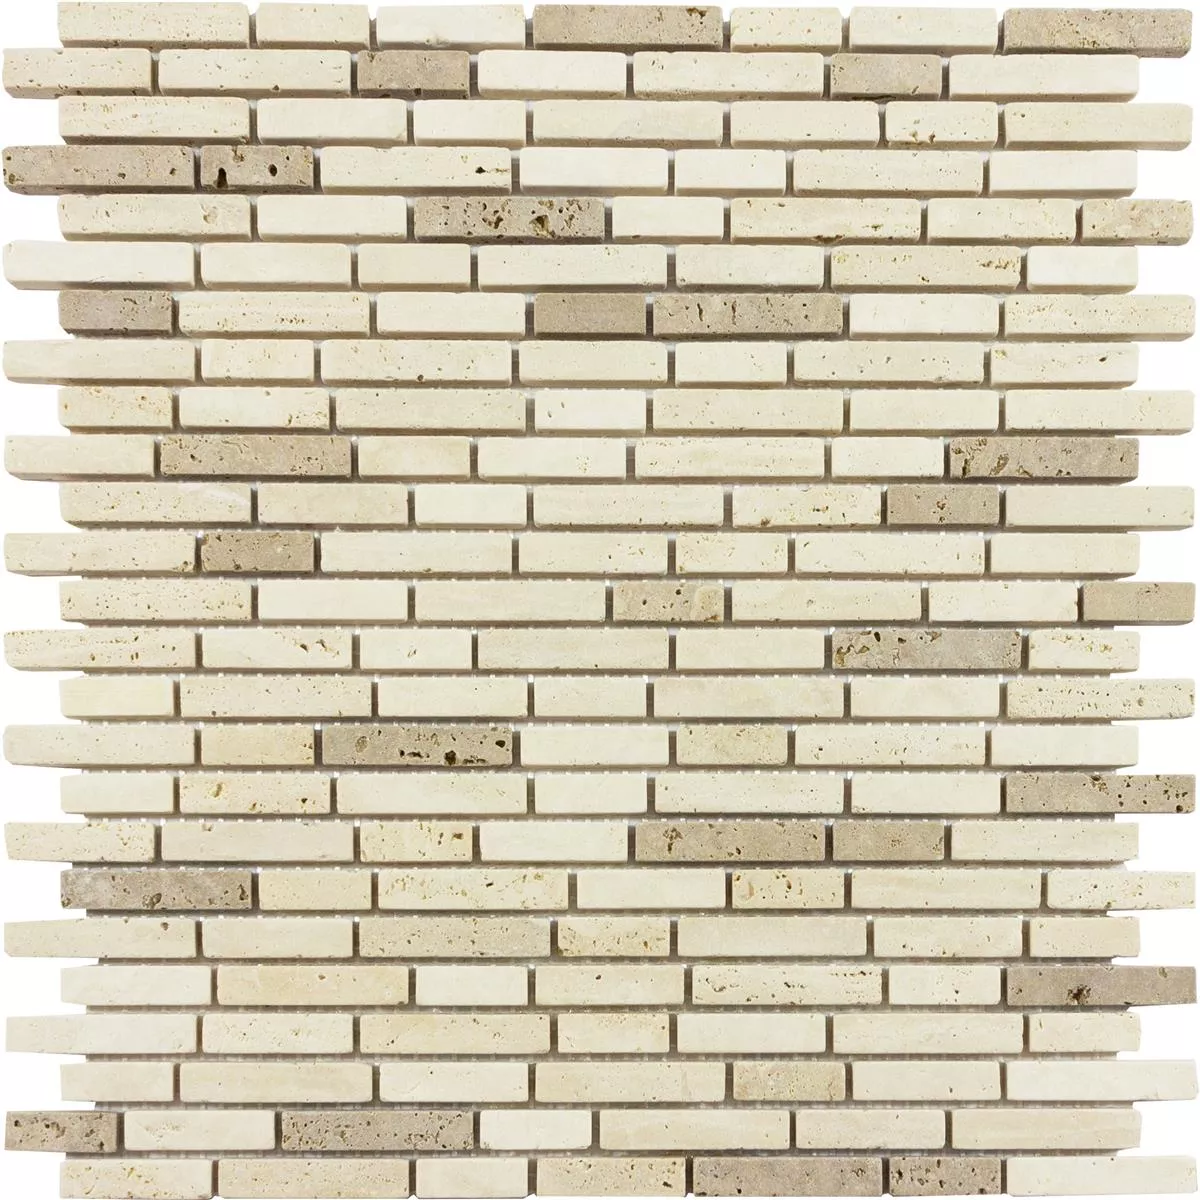 Kuvio osoitteesta Marmori Luonnonkivi Mosaiikki Laatat Tuscania Brick Beige